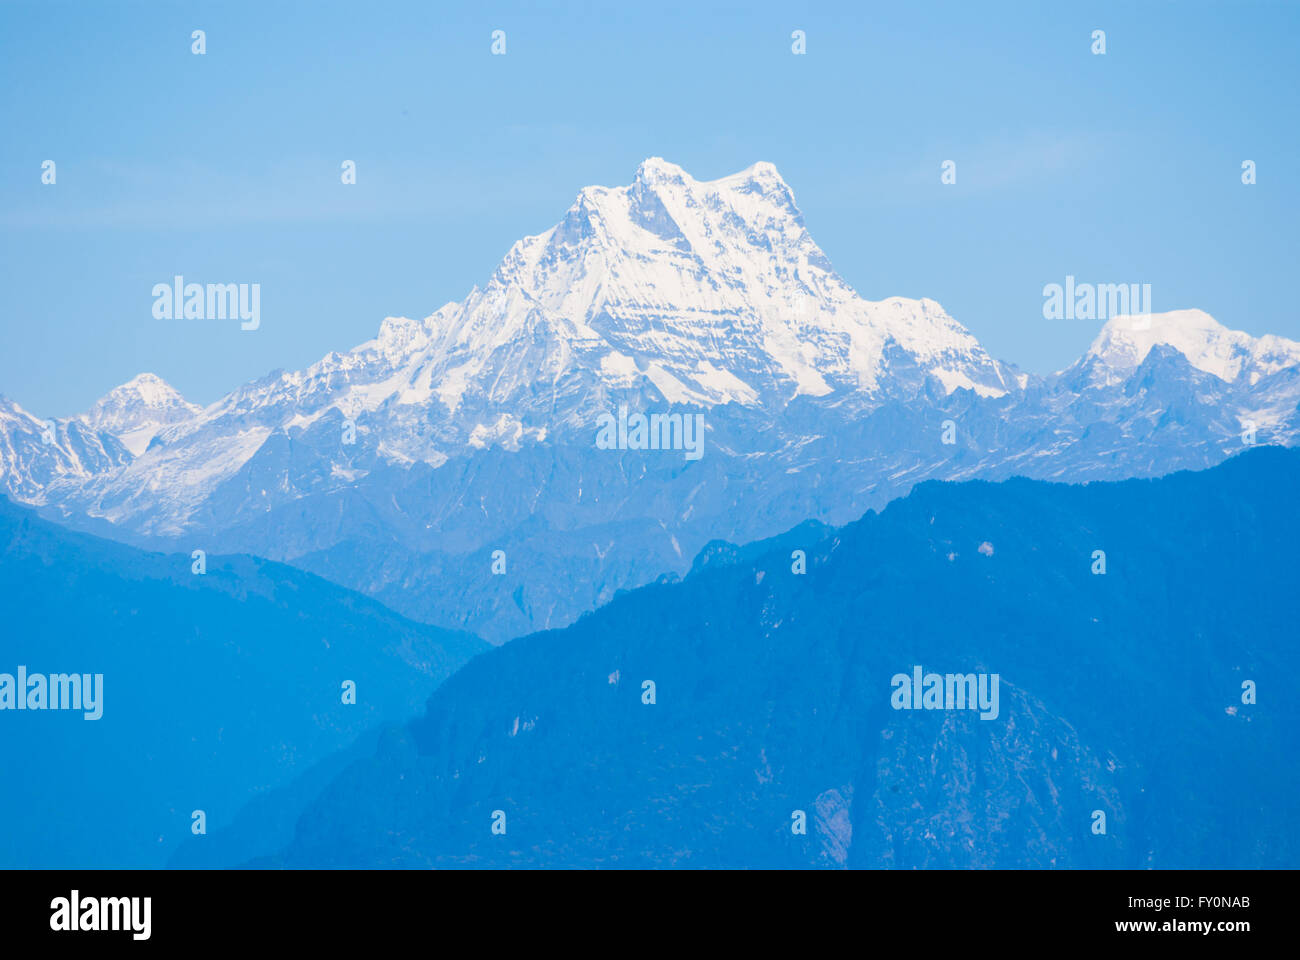 Vue de l'Himalayan peak Masang Gang (7165 m) sur la frontière nord du Bhoutan de Dochu La, un col à 3140 m dans l'ouest du Bhoutan. Banque D'Images